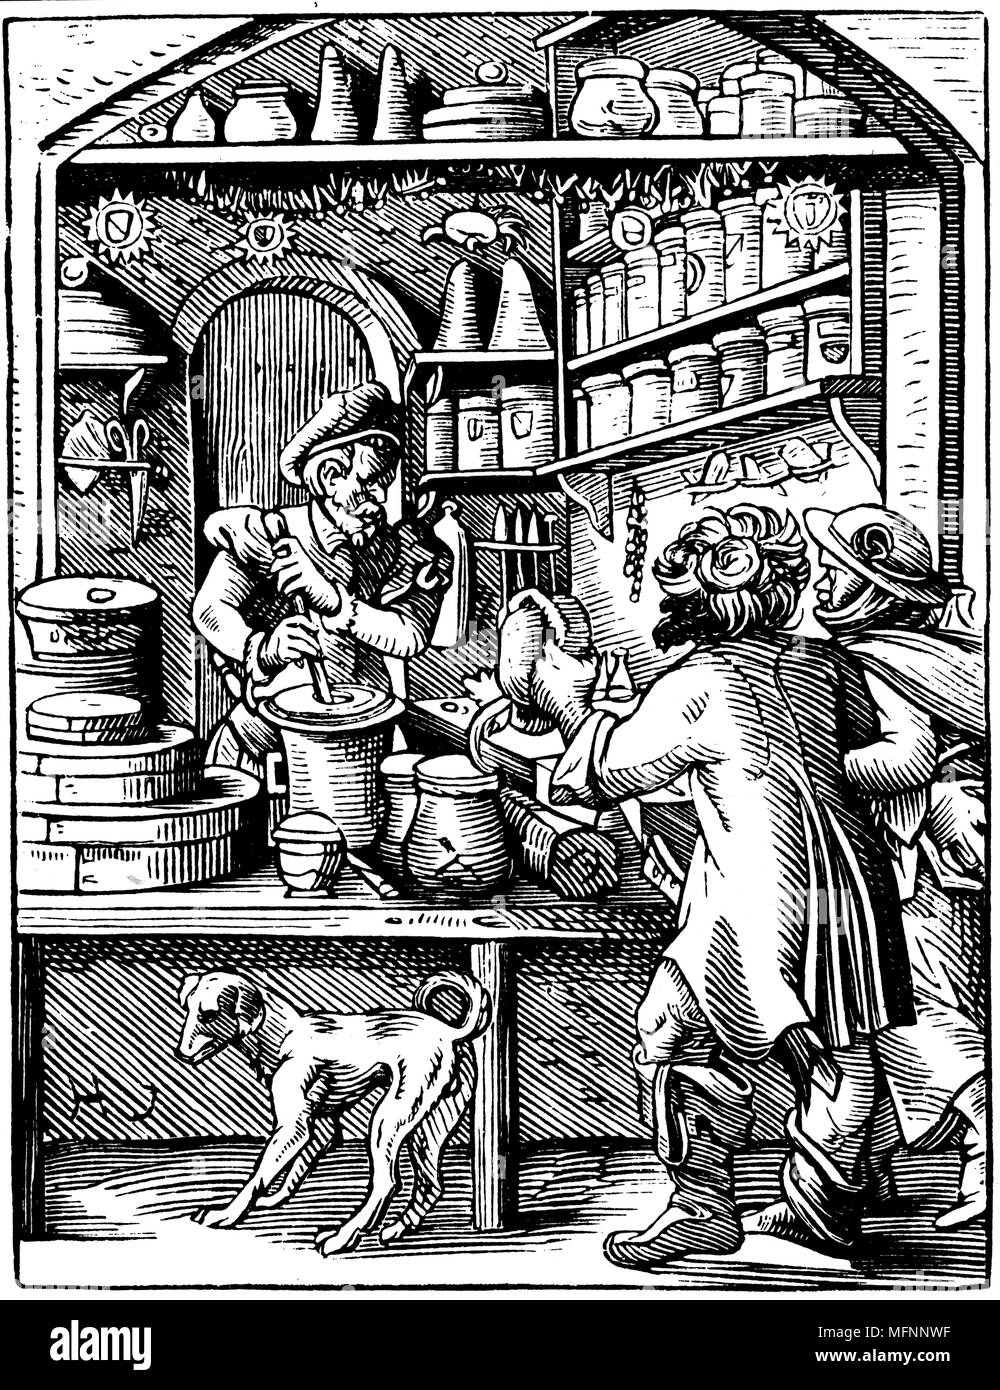 Der Apotheker. 16. Jahrhundert Holzschnitt von Jost Amman. Drogist nutzt Mörser, um Zutaten zu mahlen. Stockfoto